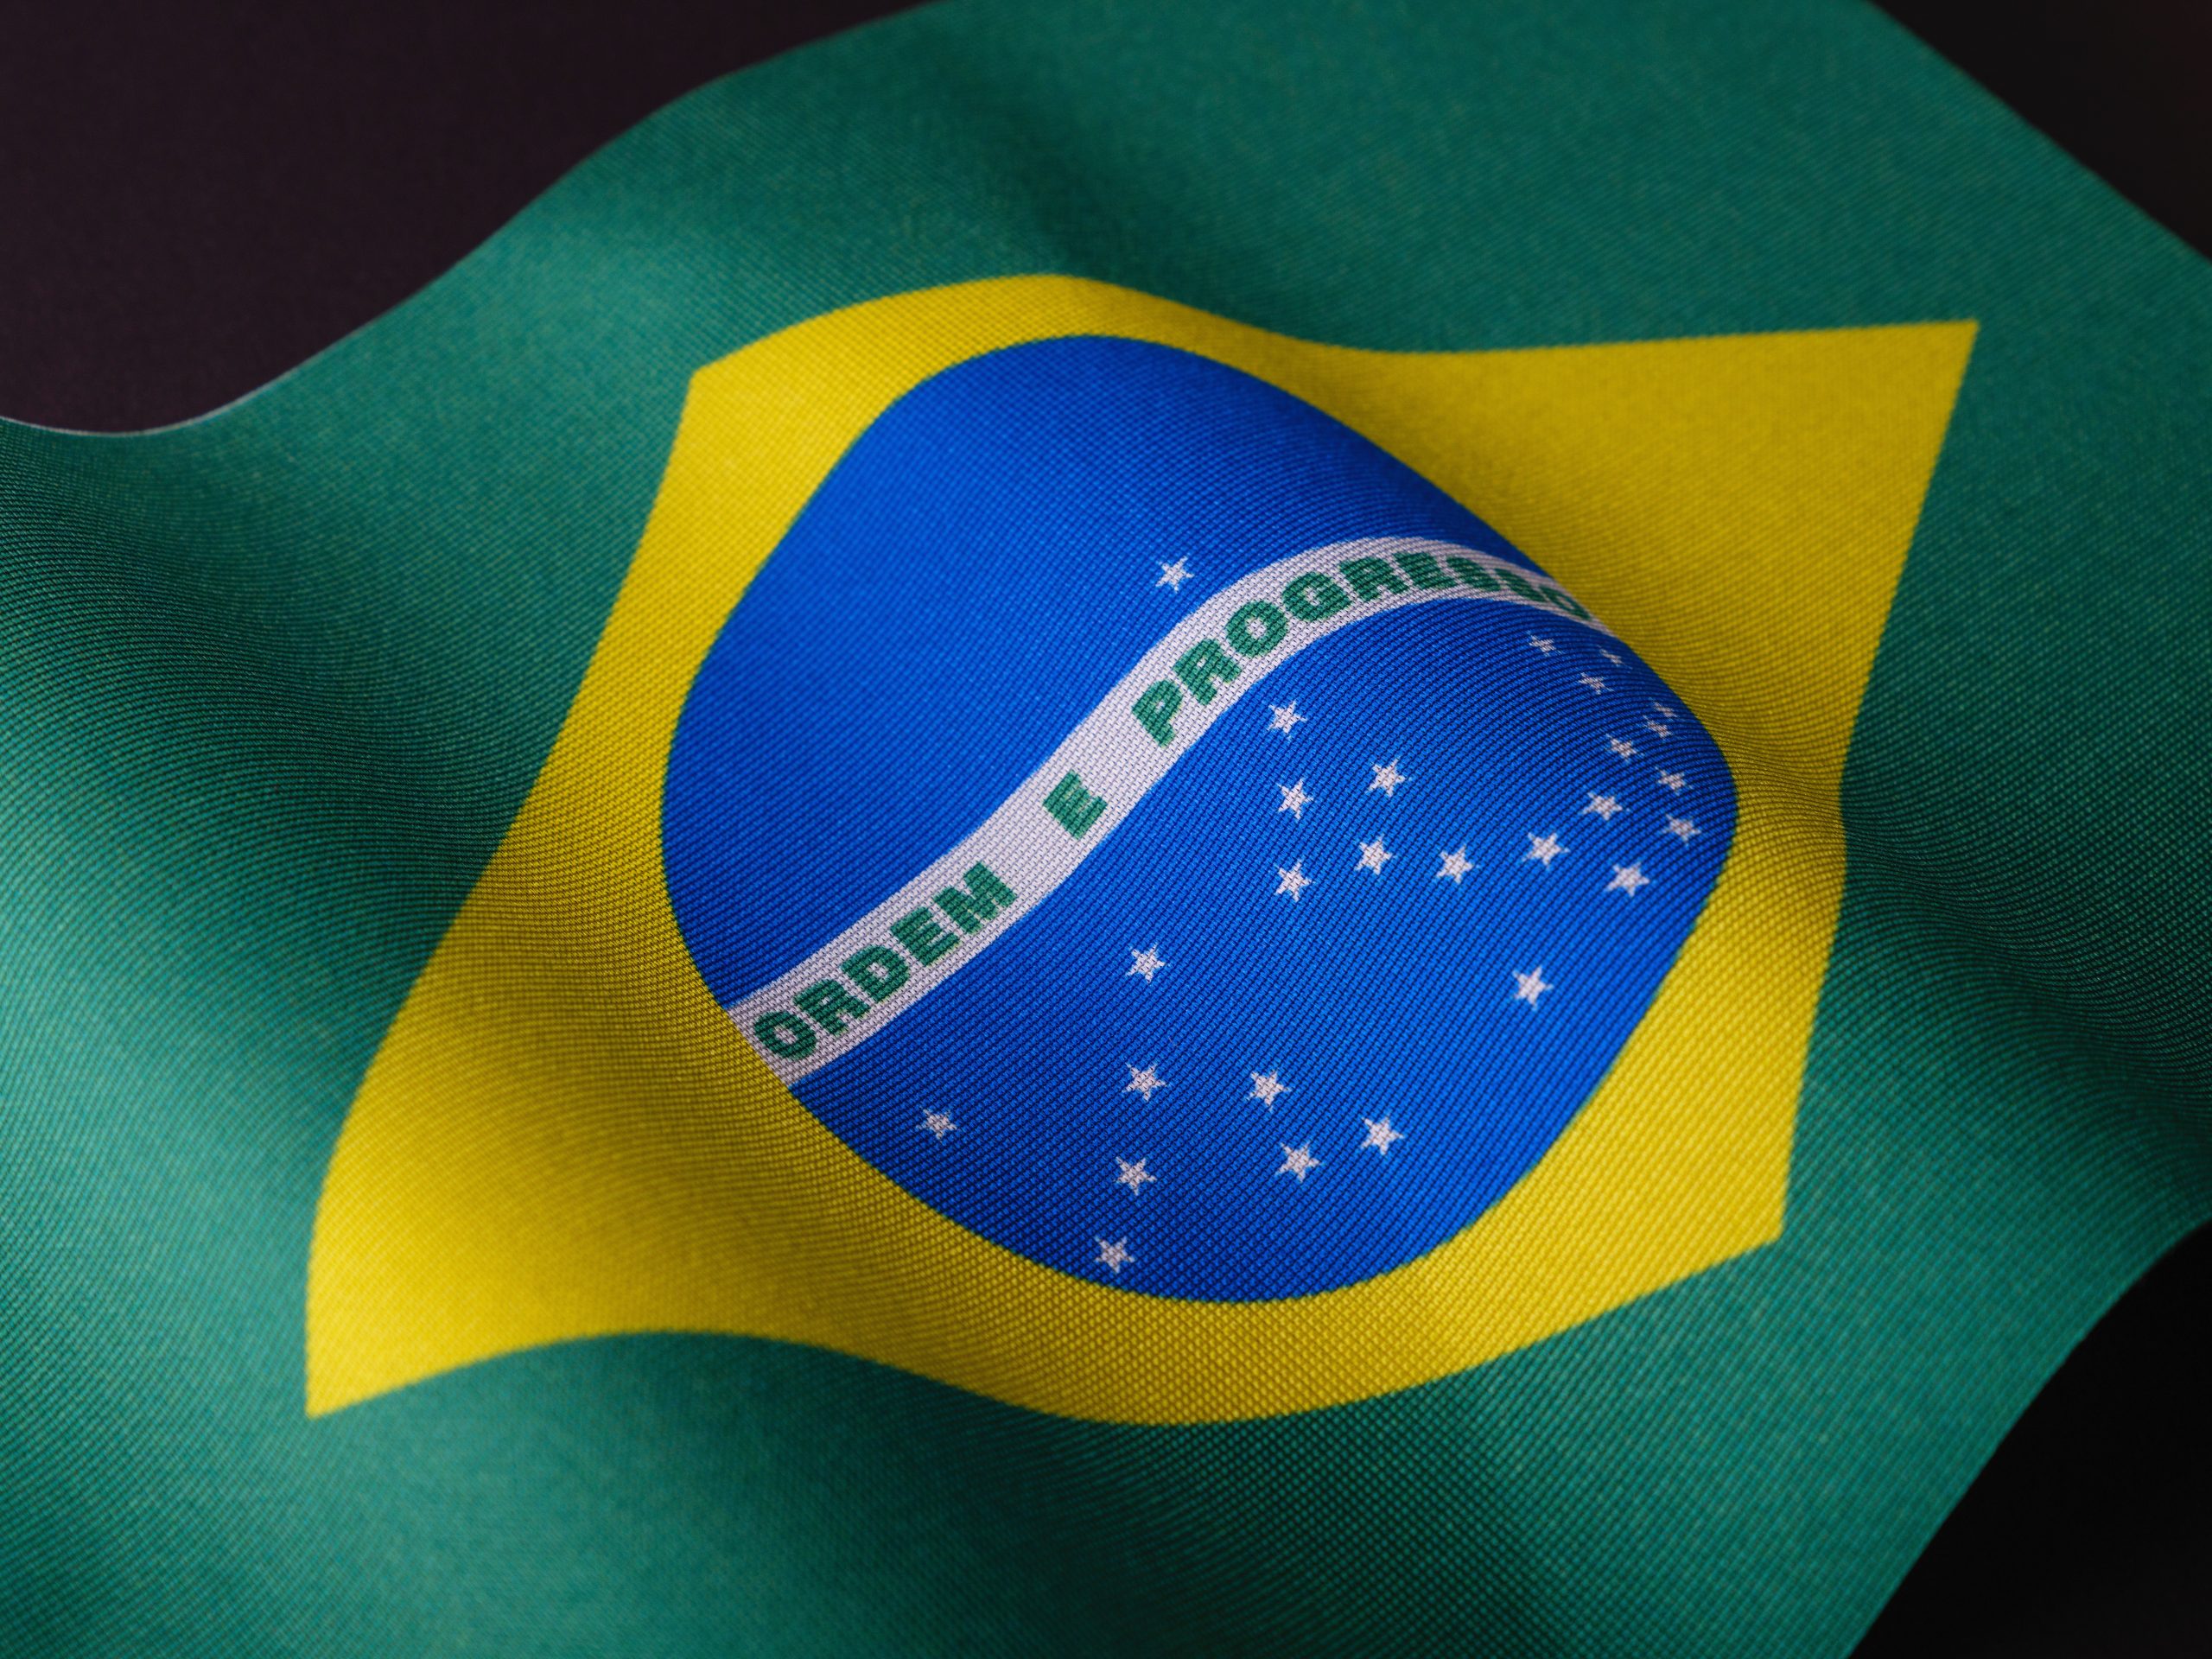 Há cerca de 19 mil brasileiros no ensino superior em Portugal. É o maior grupo estrangeiro